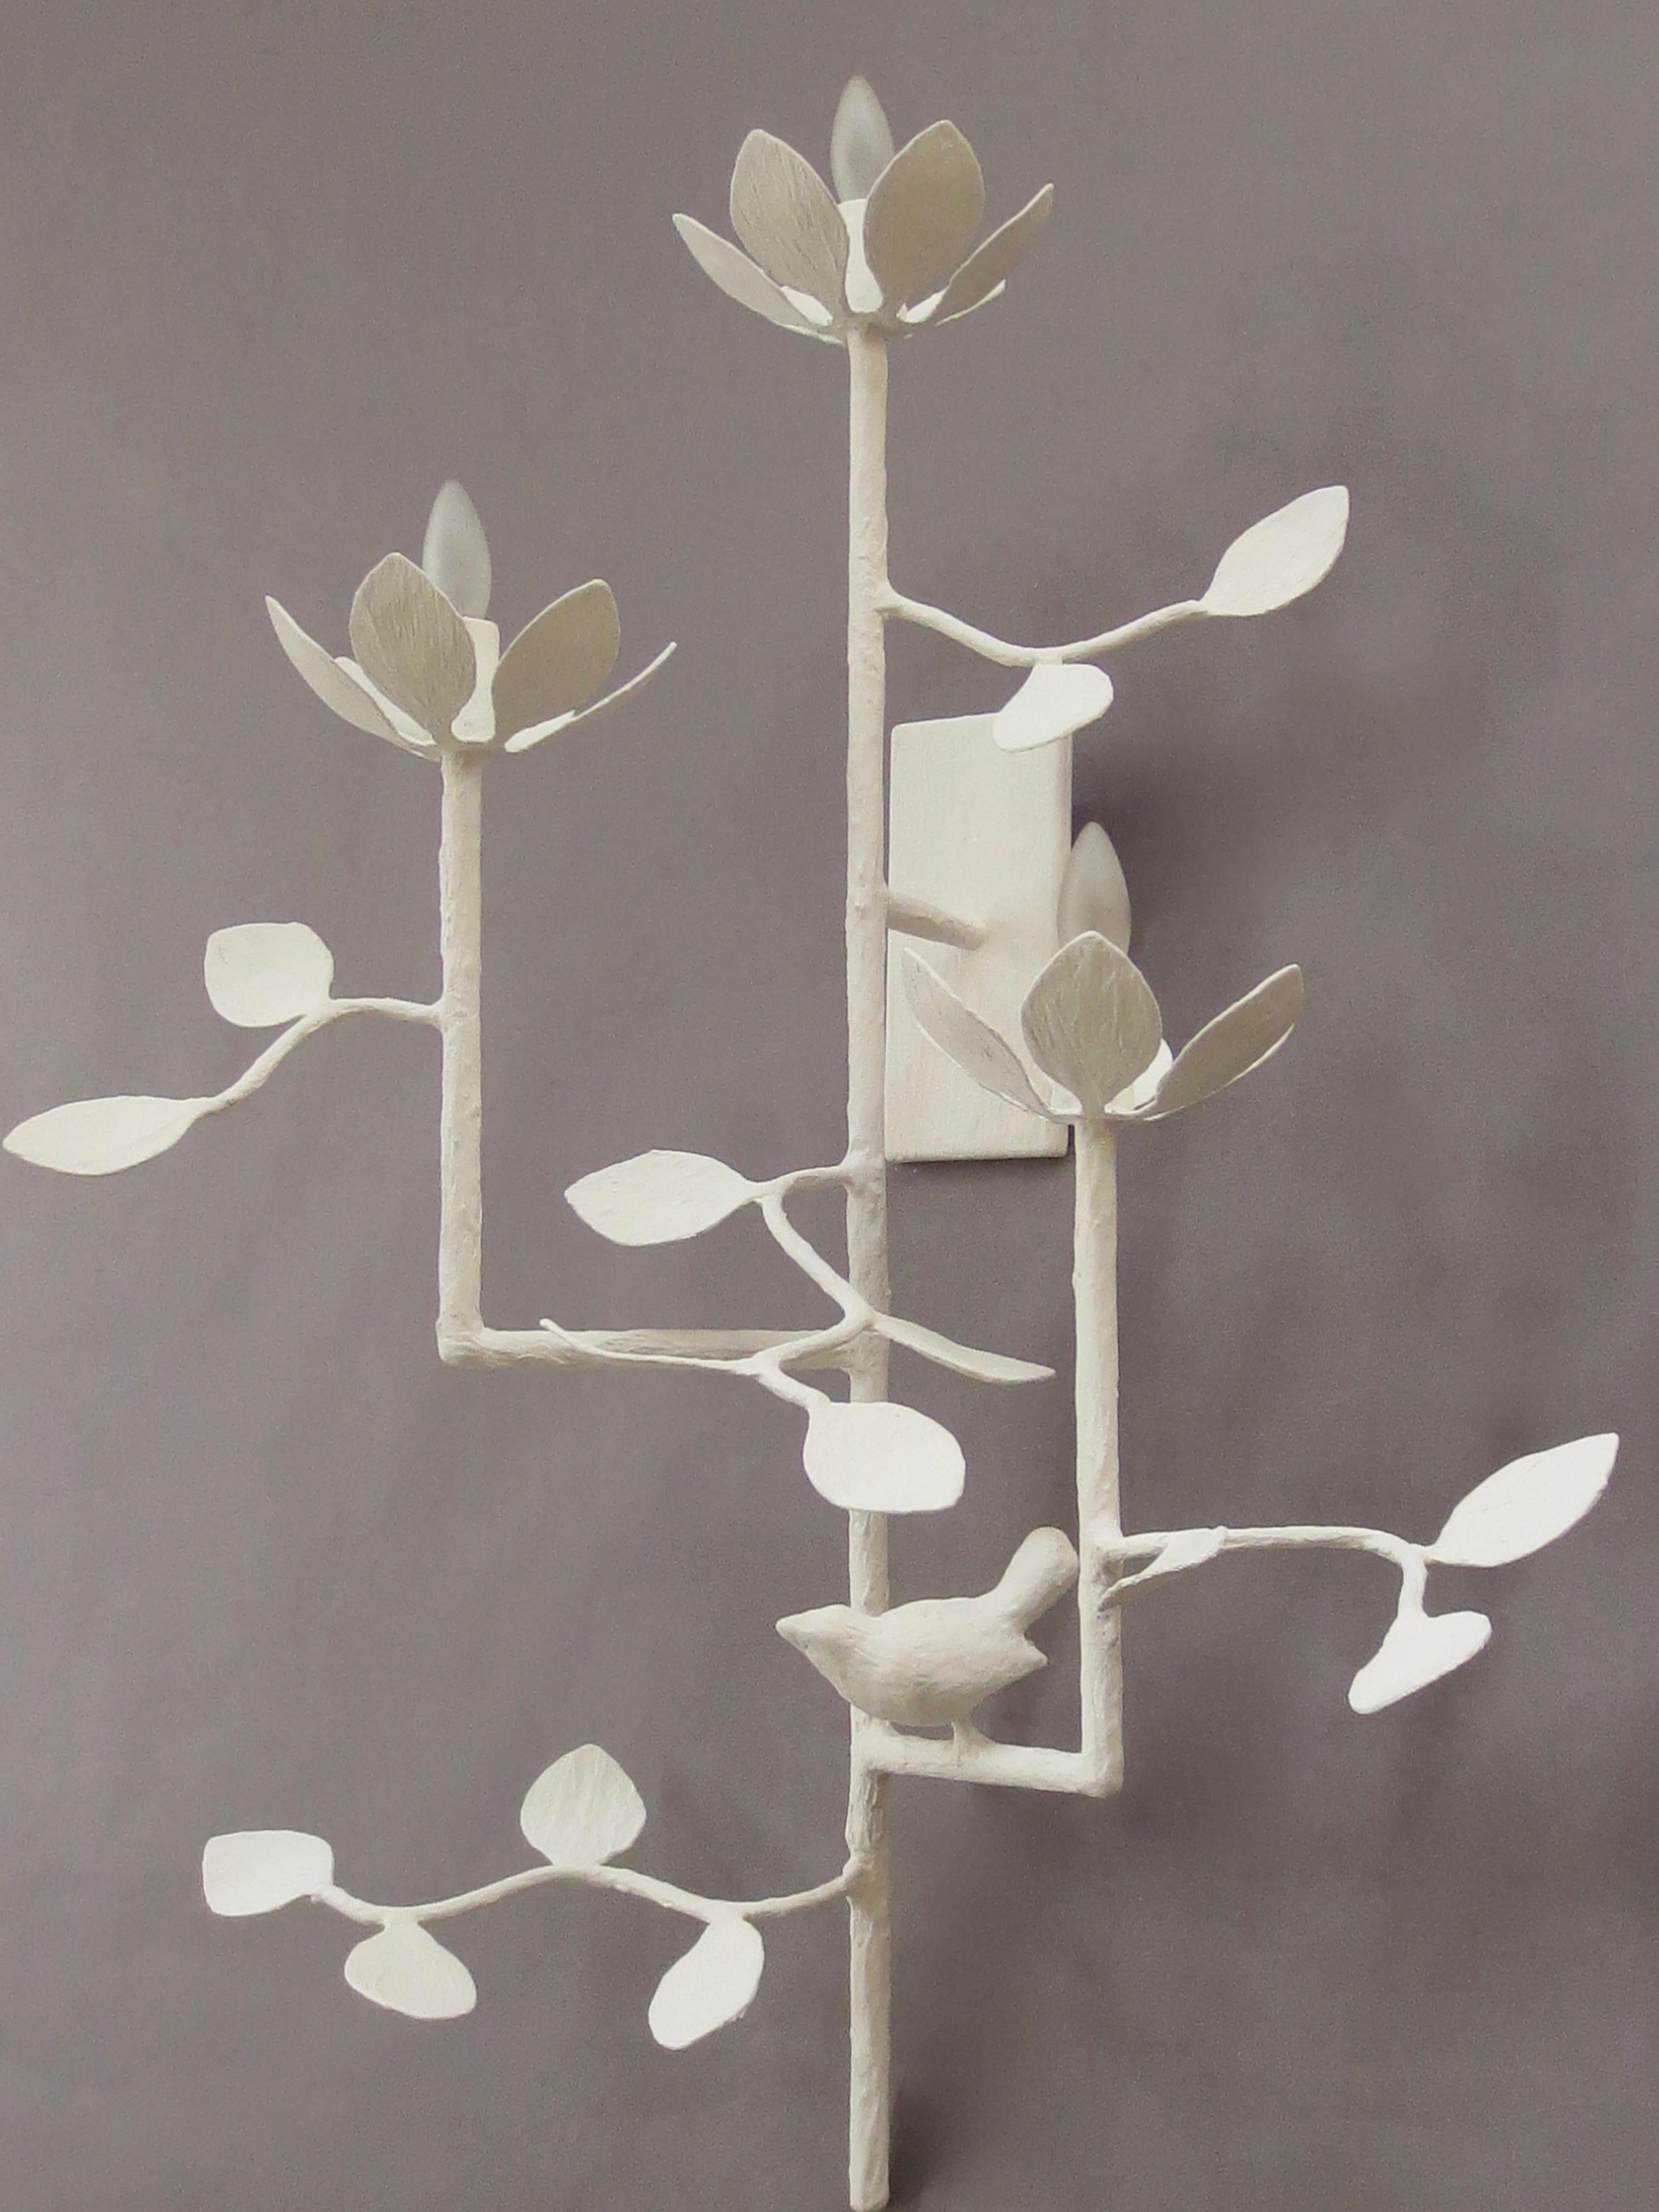 L'applique murale en plâtre à 3 bras Lotus de Tracey Garet d'Apsara Interior Design comprend 3 lumières sur différents niveaux. Un oiseau unique orne l'un des bras et des feuilles sont détaillées partout. Les 3 fleurs de lotus contiennent chacune